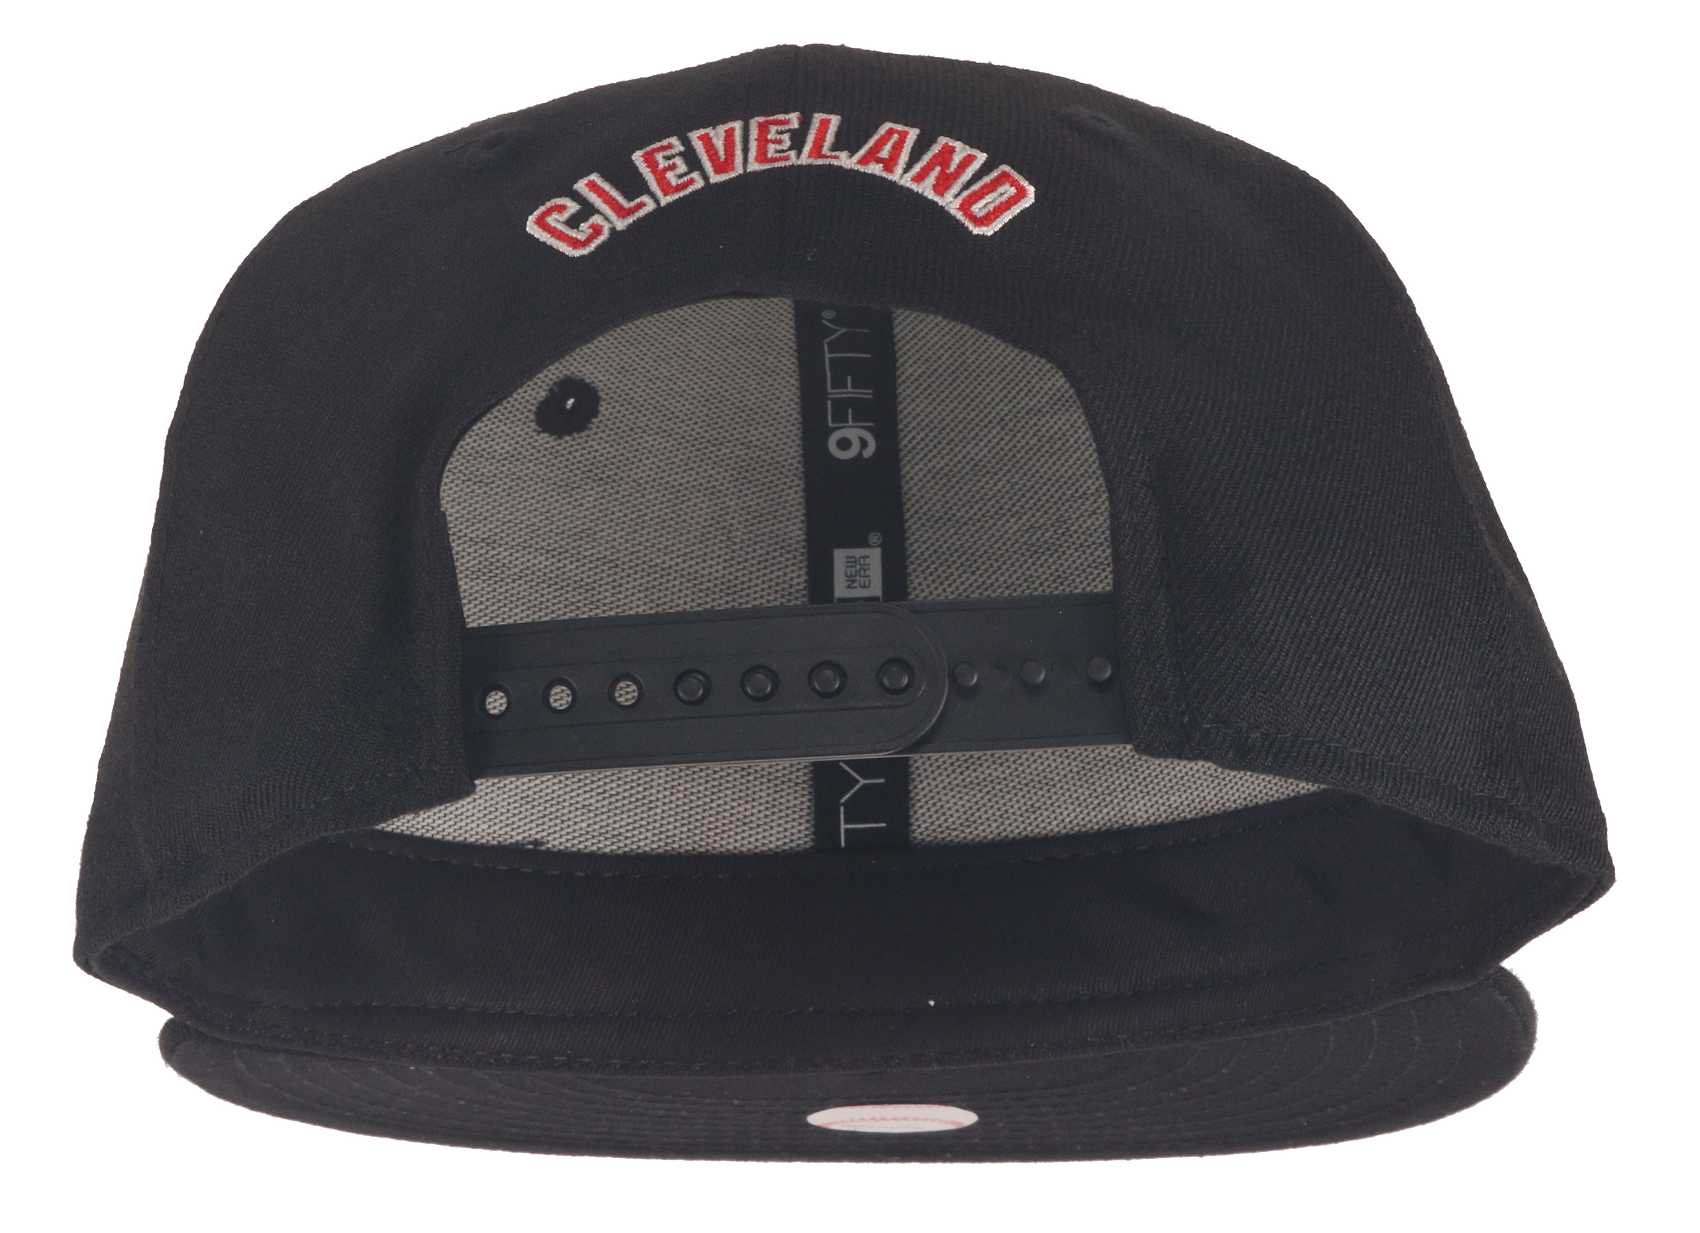 Cleveland Indians Black Base Black 9Fifty Snapback Cap New Era